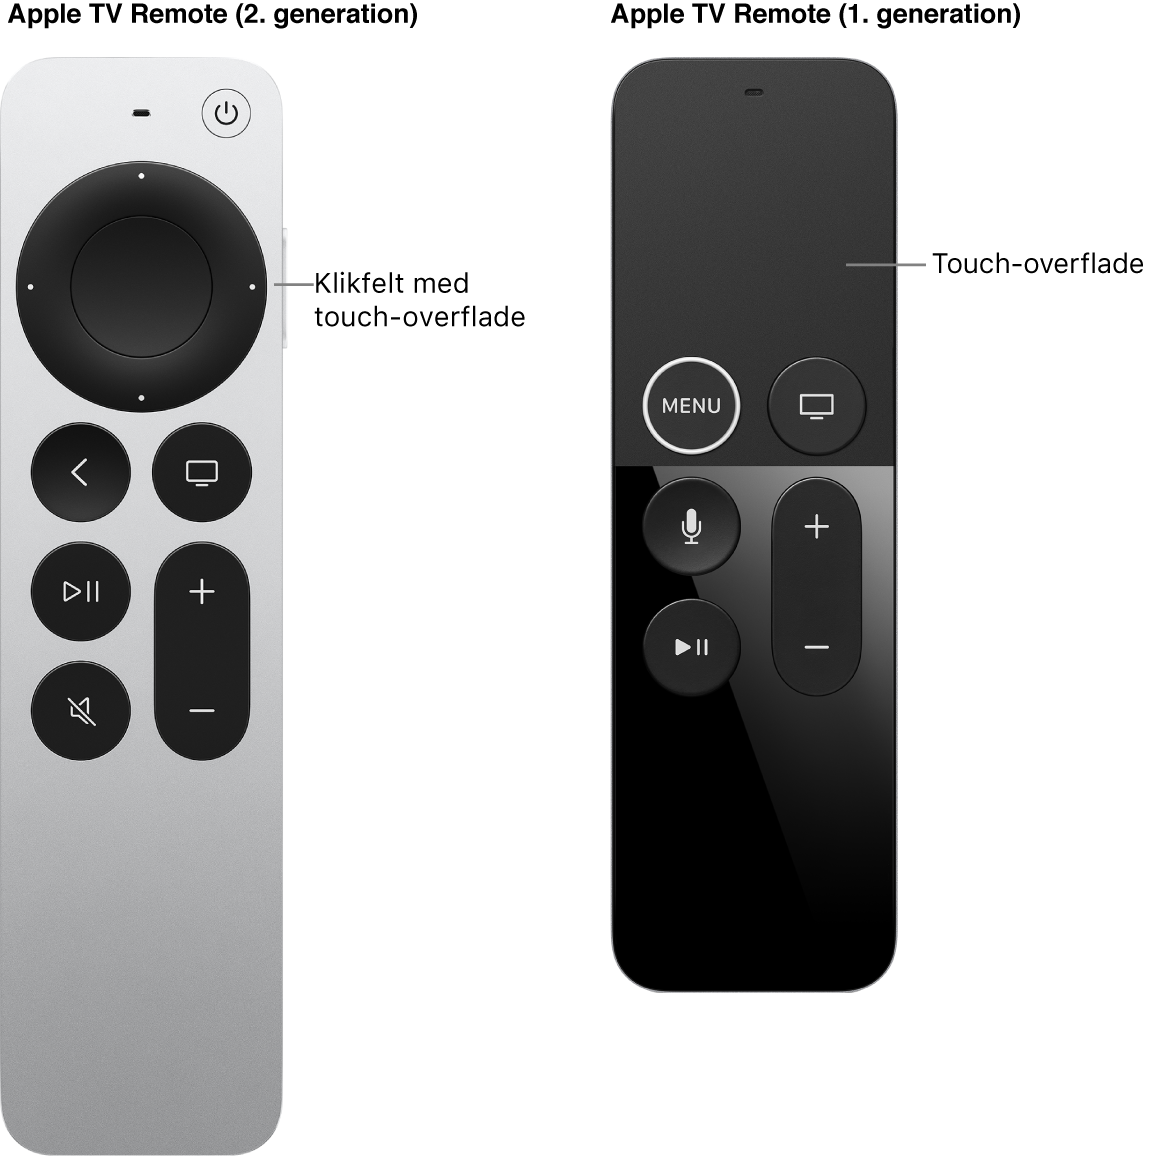 Apple TV Remote (2. generation) med klikfelt og Apple TV Remote (1. generation) med touch-overflade